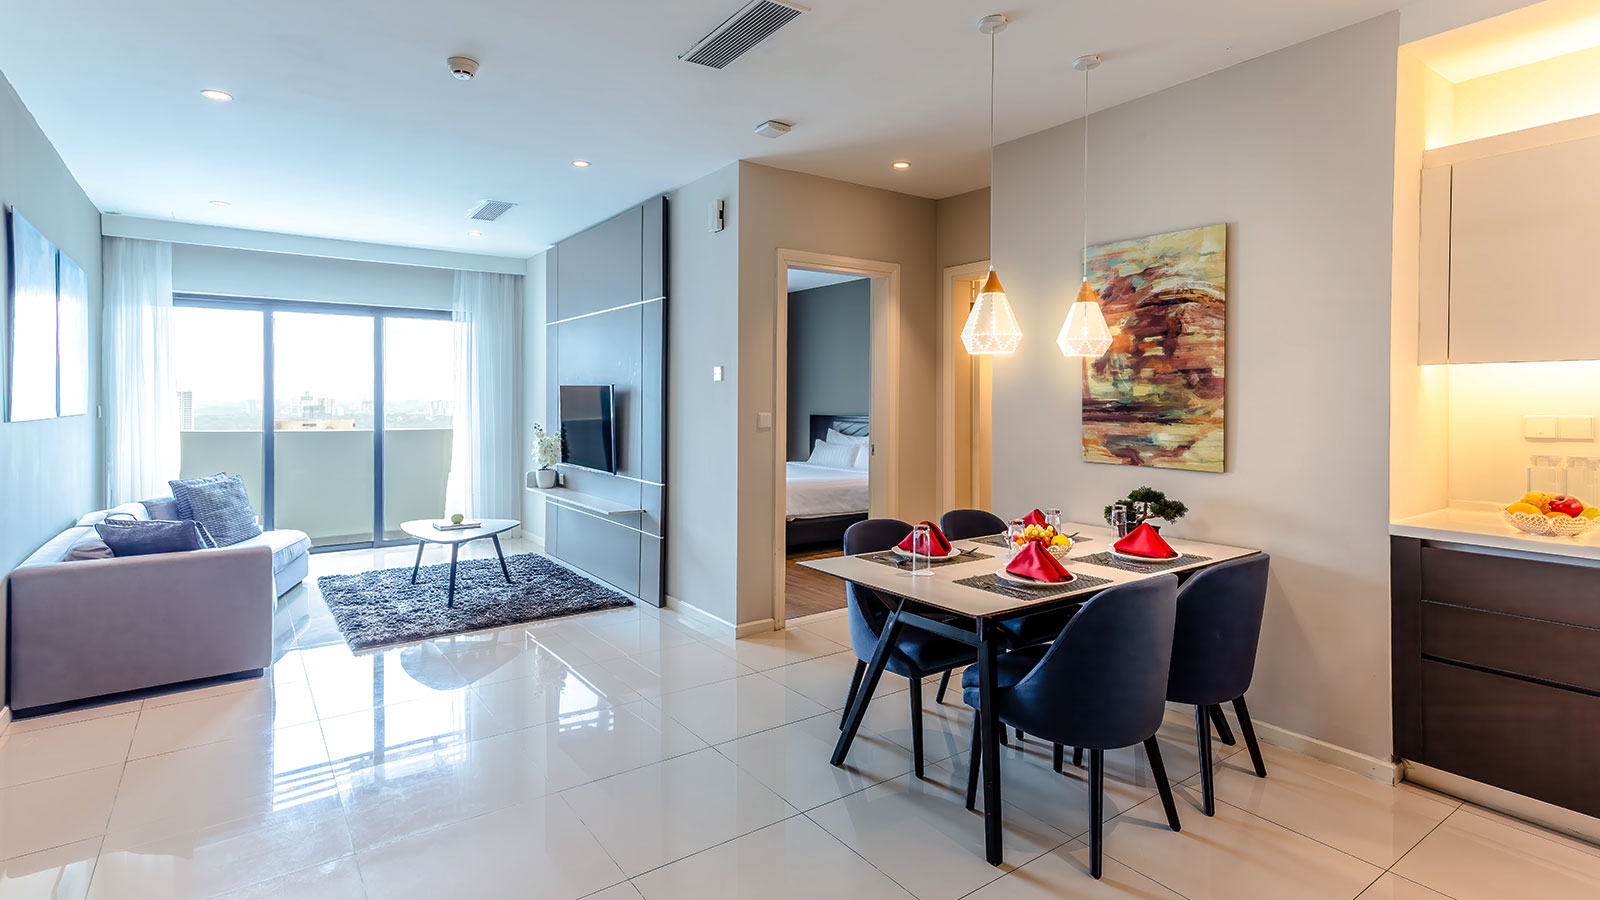 Shama Suasana Johor Bahru -Executive One Bedroom Suite Living and Dining Area - Shama Suasana Johor Bahru